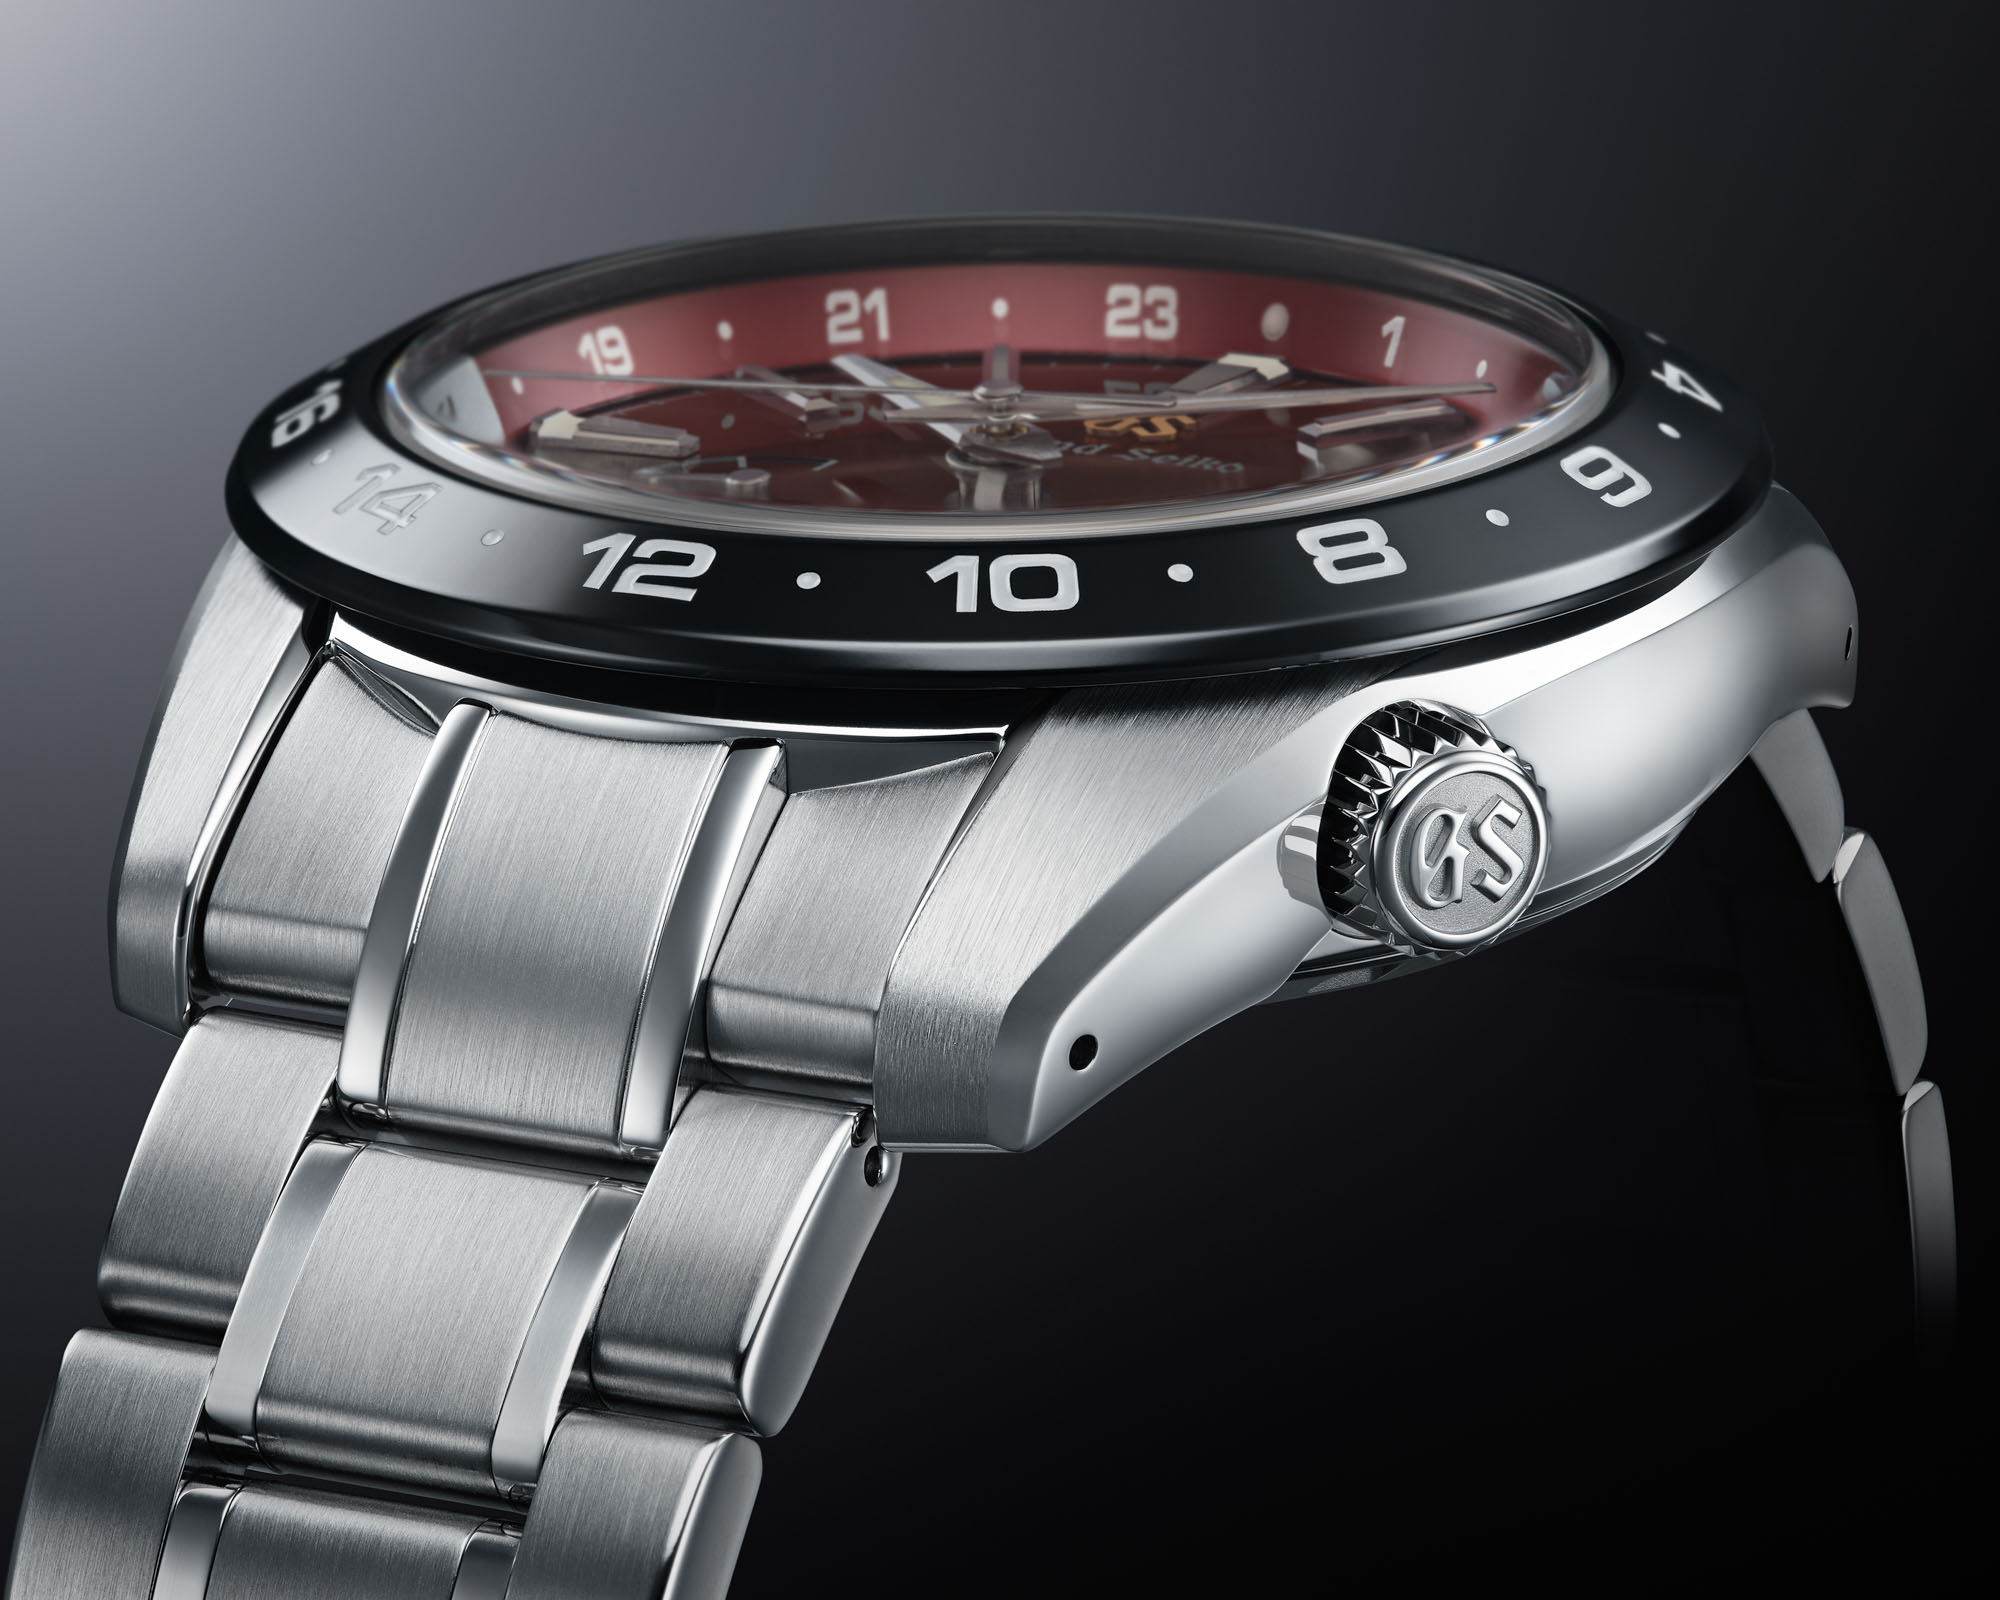 Новый выпуск: Часы Grand Seiko Spring Drive SBGA497 и SBGE305 Caliber 9R, посвященные 20-летию компании